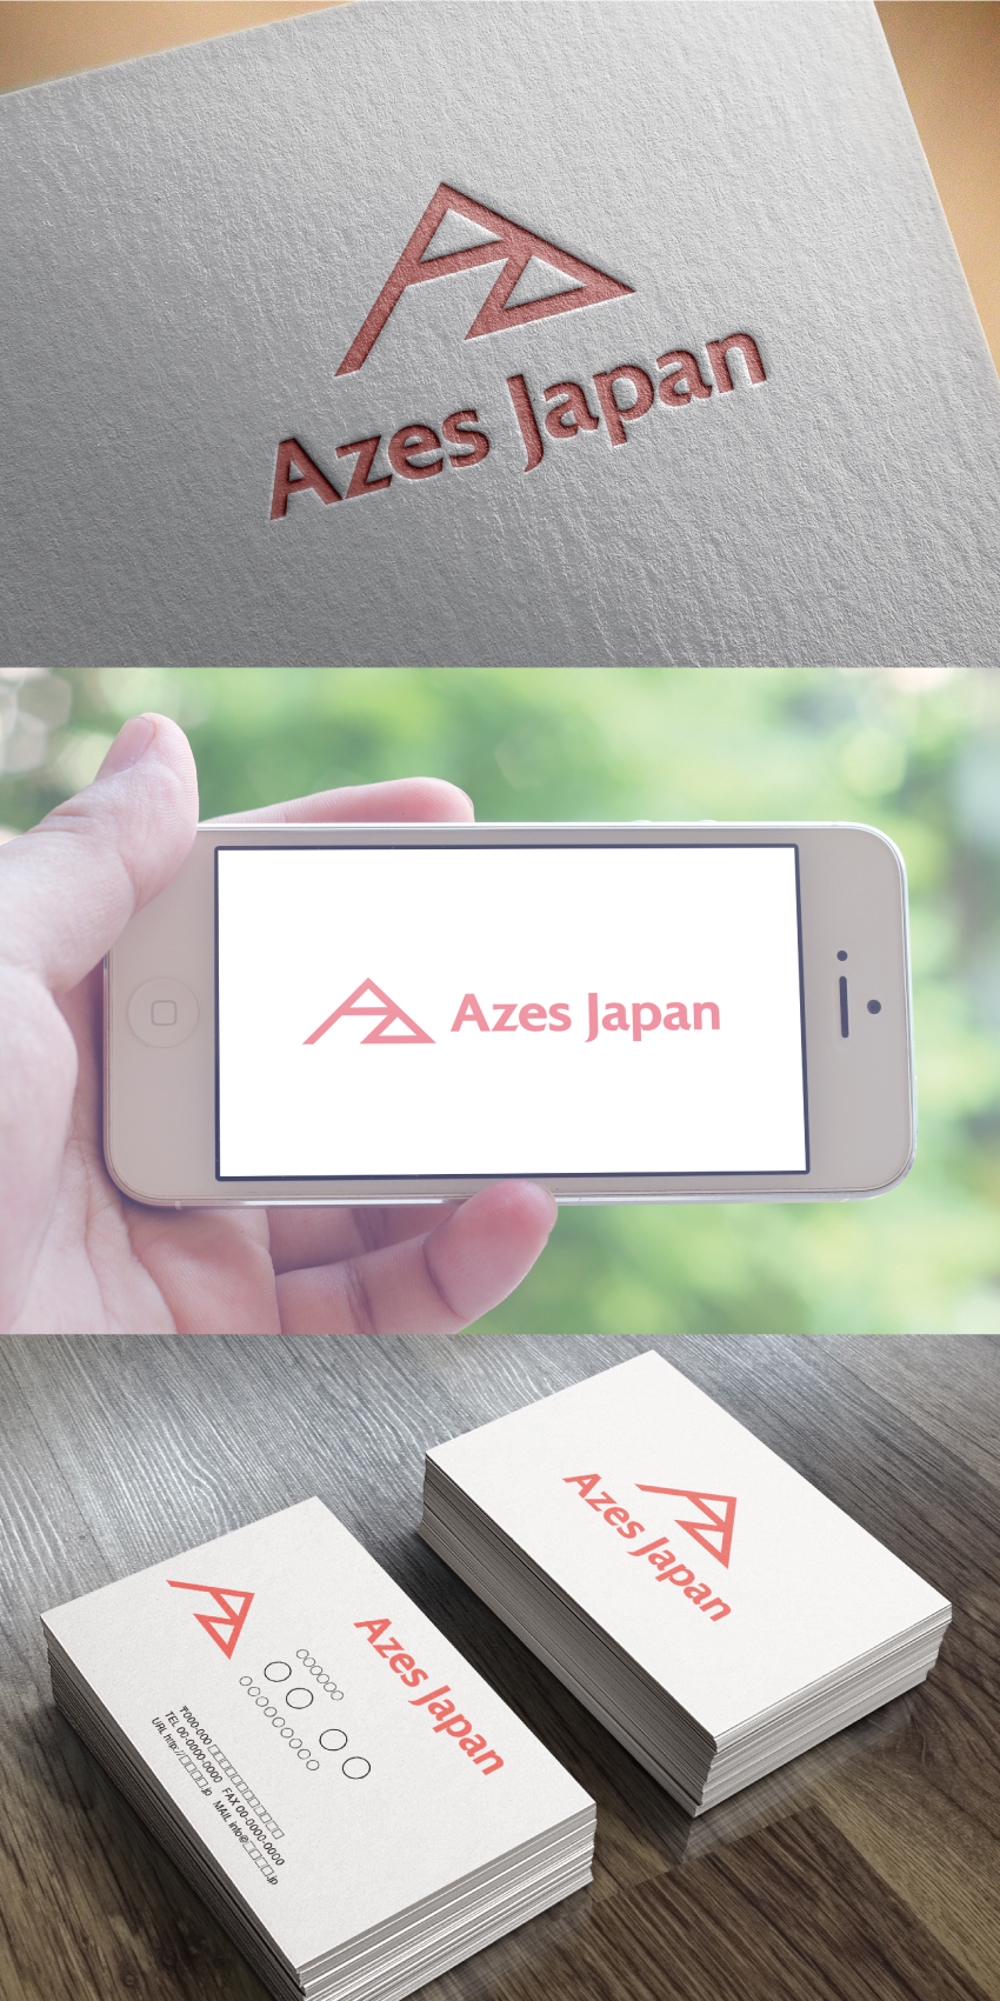 Azes Japan株式会社(アジーズジャパン)  のロゴ